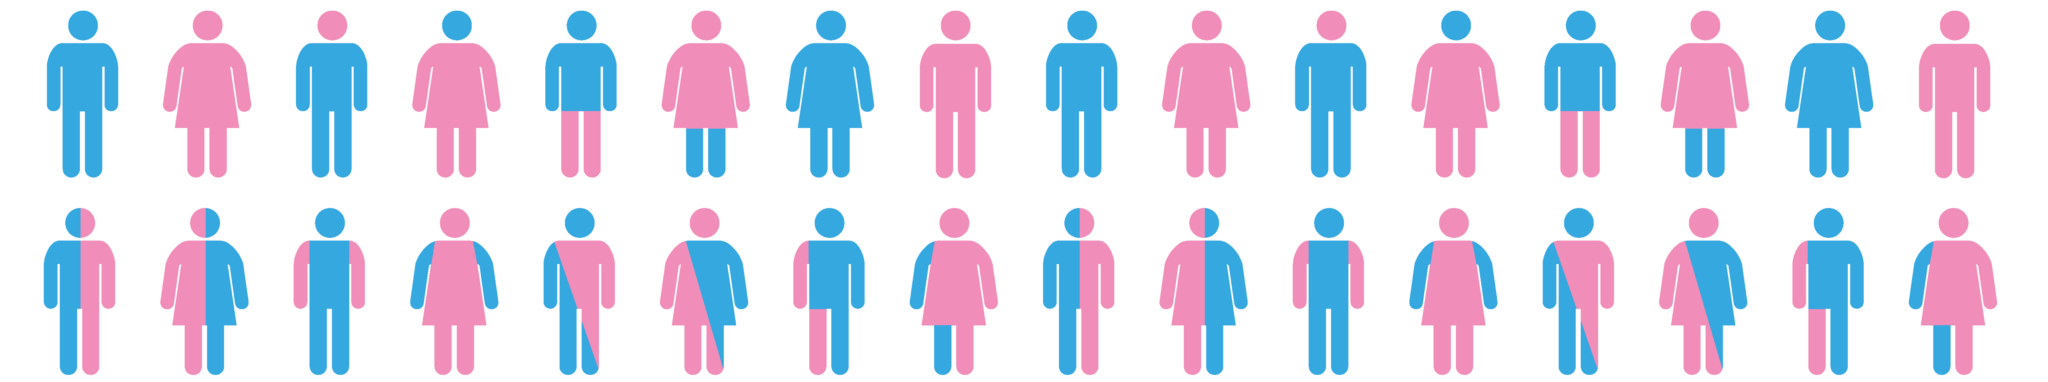 Image montrant des pictogrammes d'hommes et de femmes avec des découapges de rose et de bleus aléatoires pour exprimer la diversité